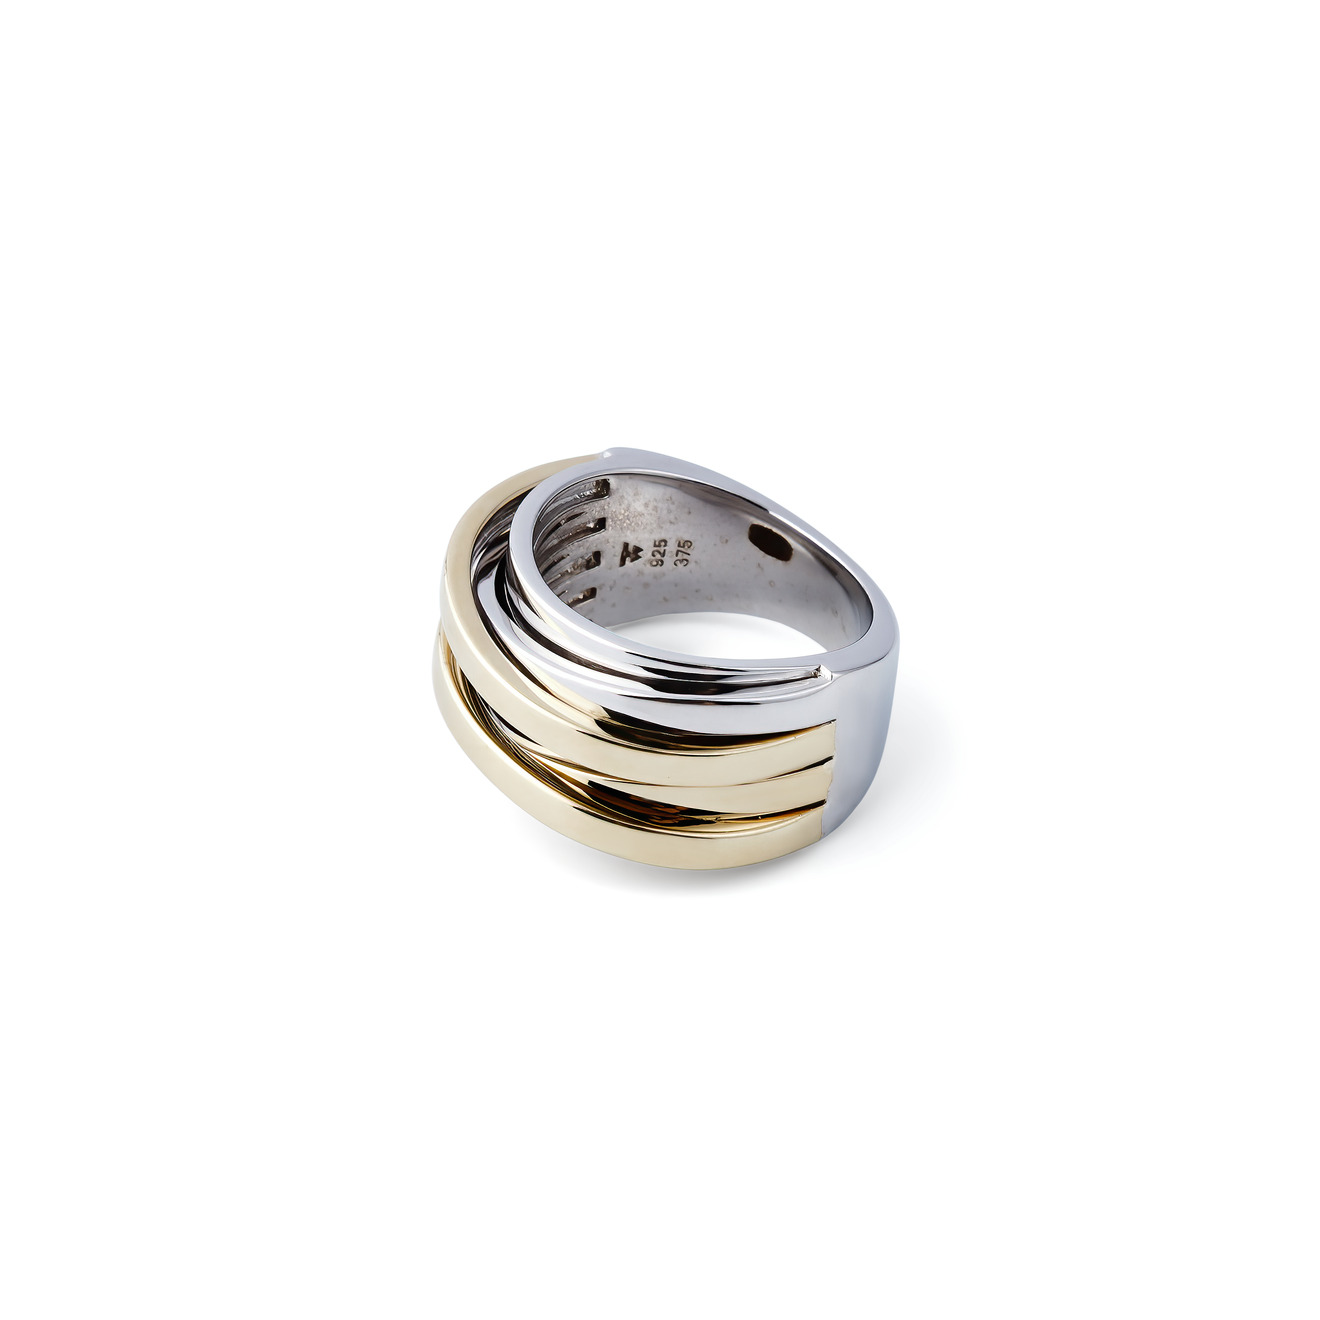 Tom Wood Биколорное кольцо Orb из серебра tom wood кольцо joe из серебра